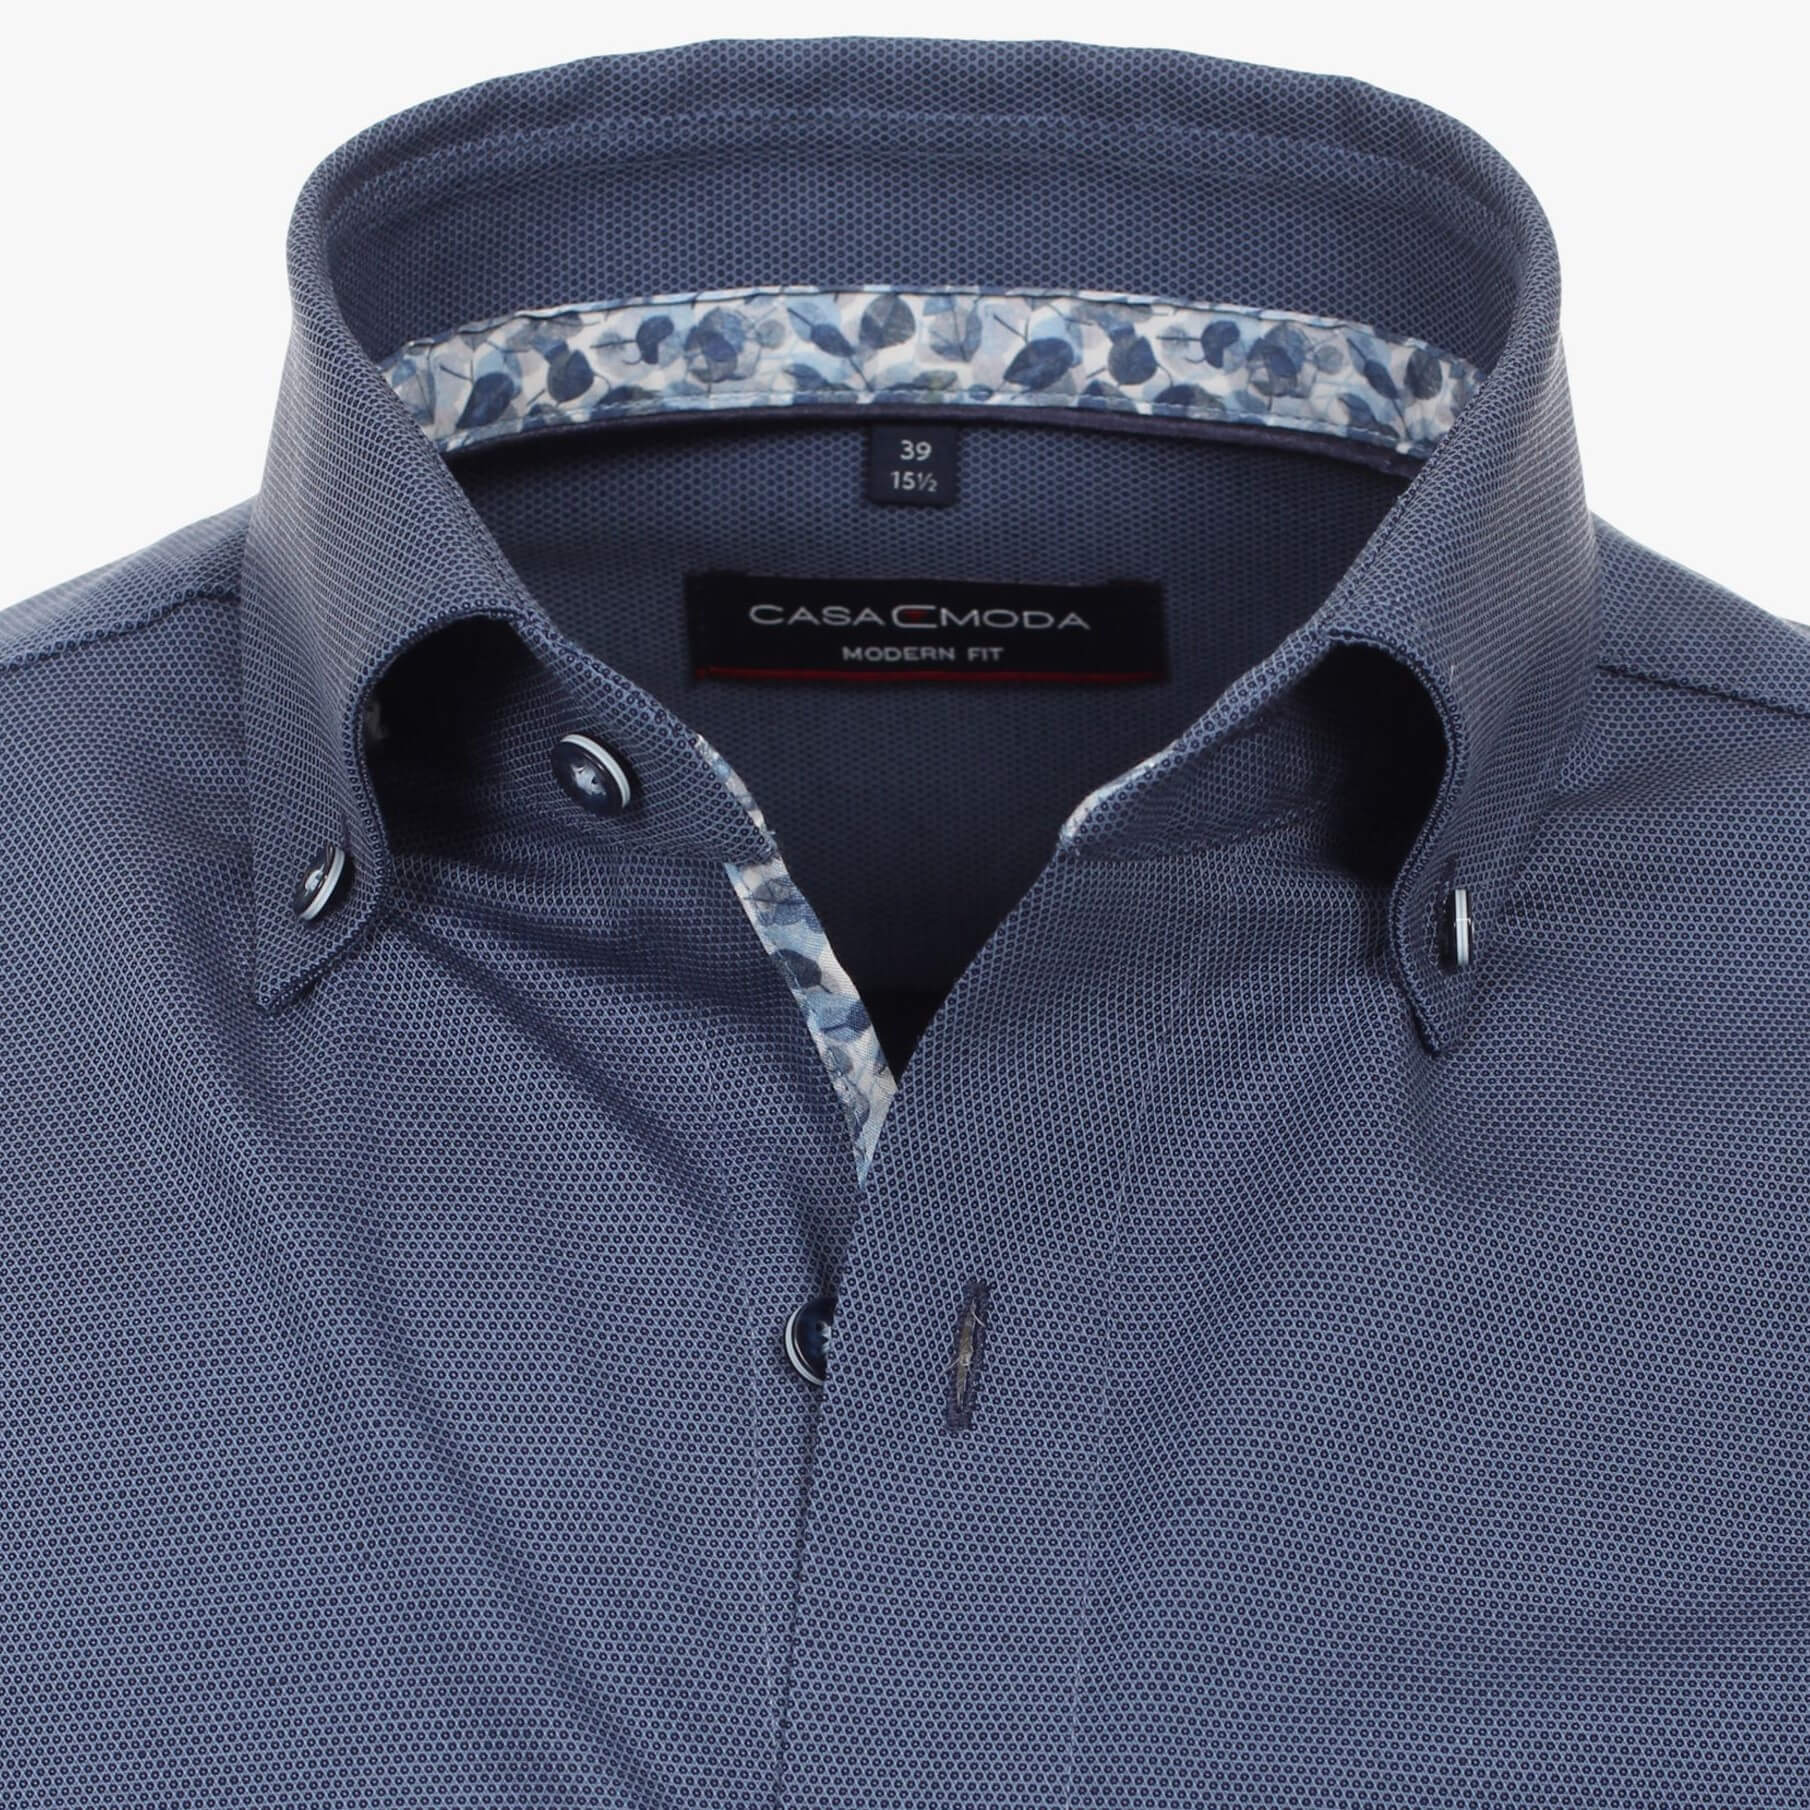 Рубашка мужская Casamoda Modern Fit 334018300-103 темно-синяя с цветной отделкой